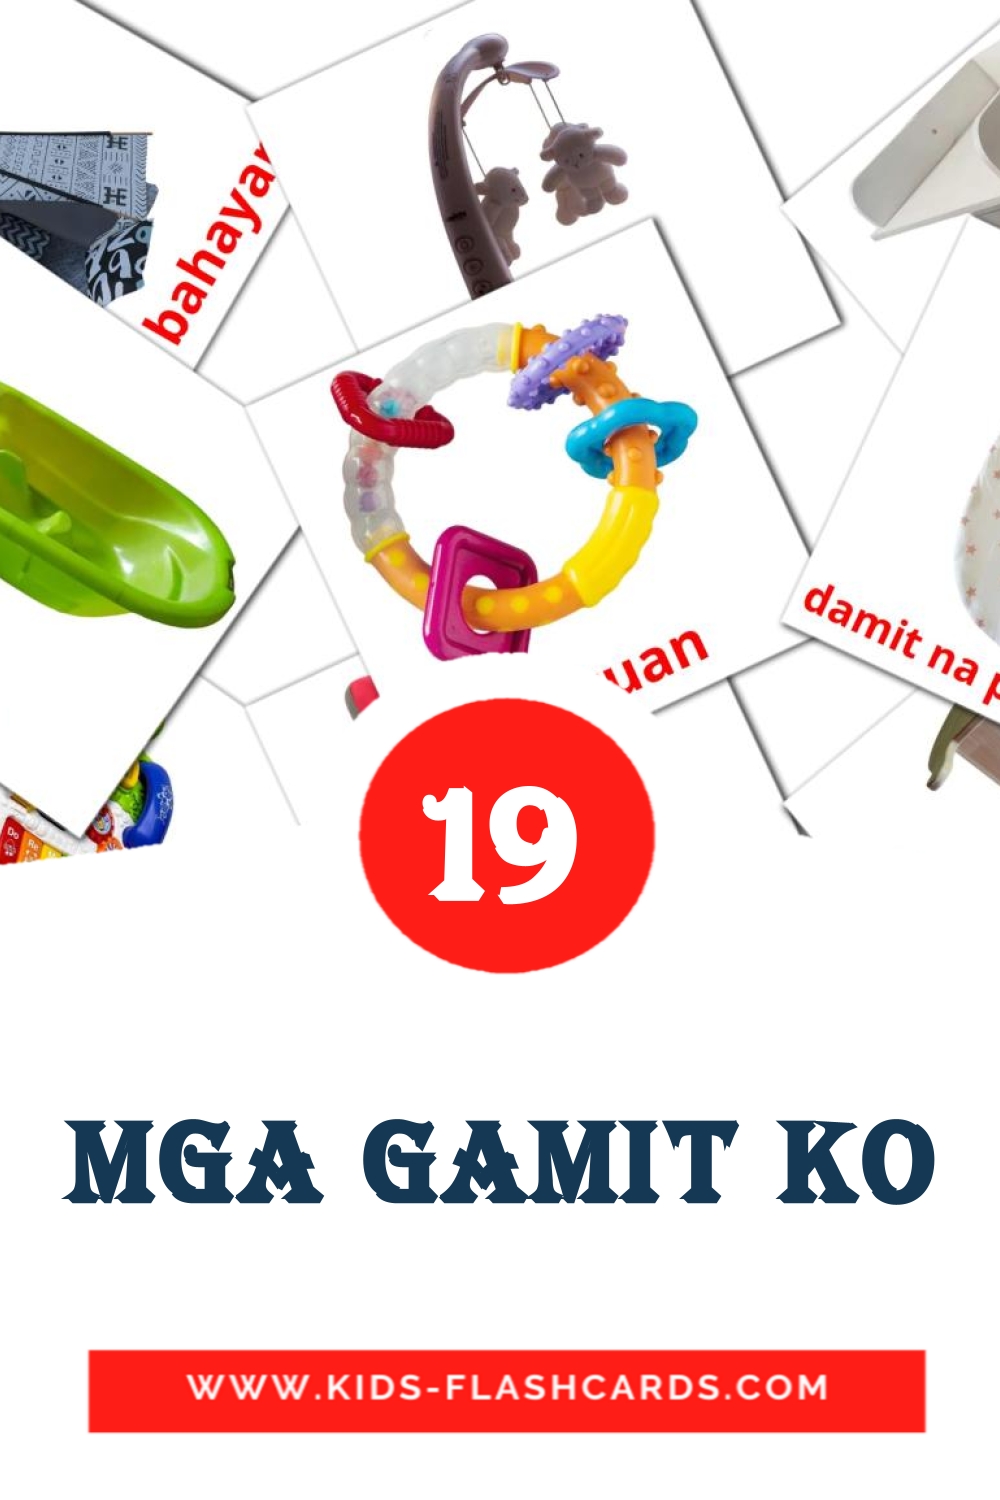 19 carte illustrate di Mga gamit ko per la scuola materna in filippino